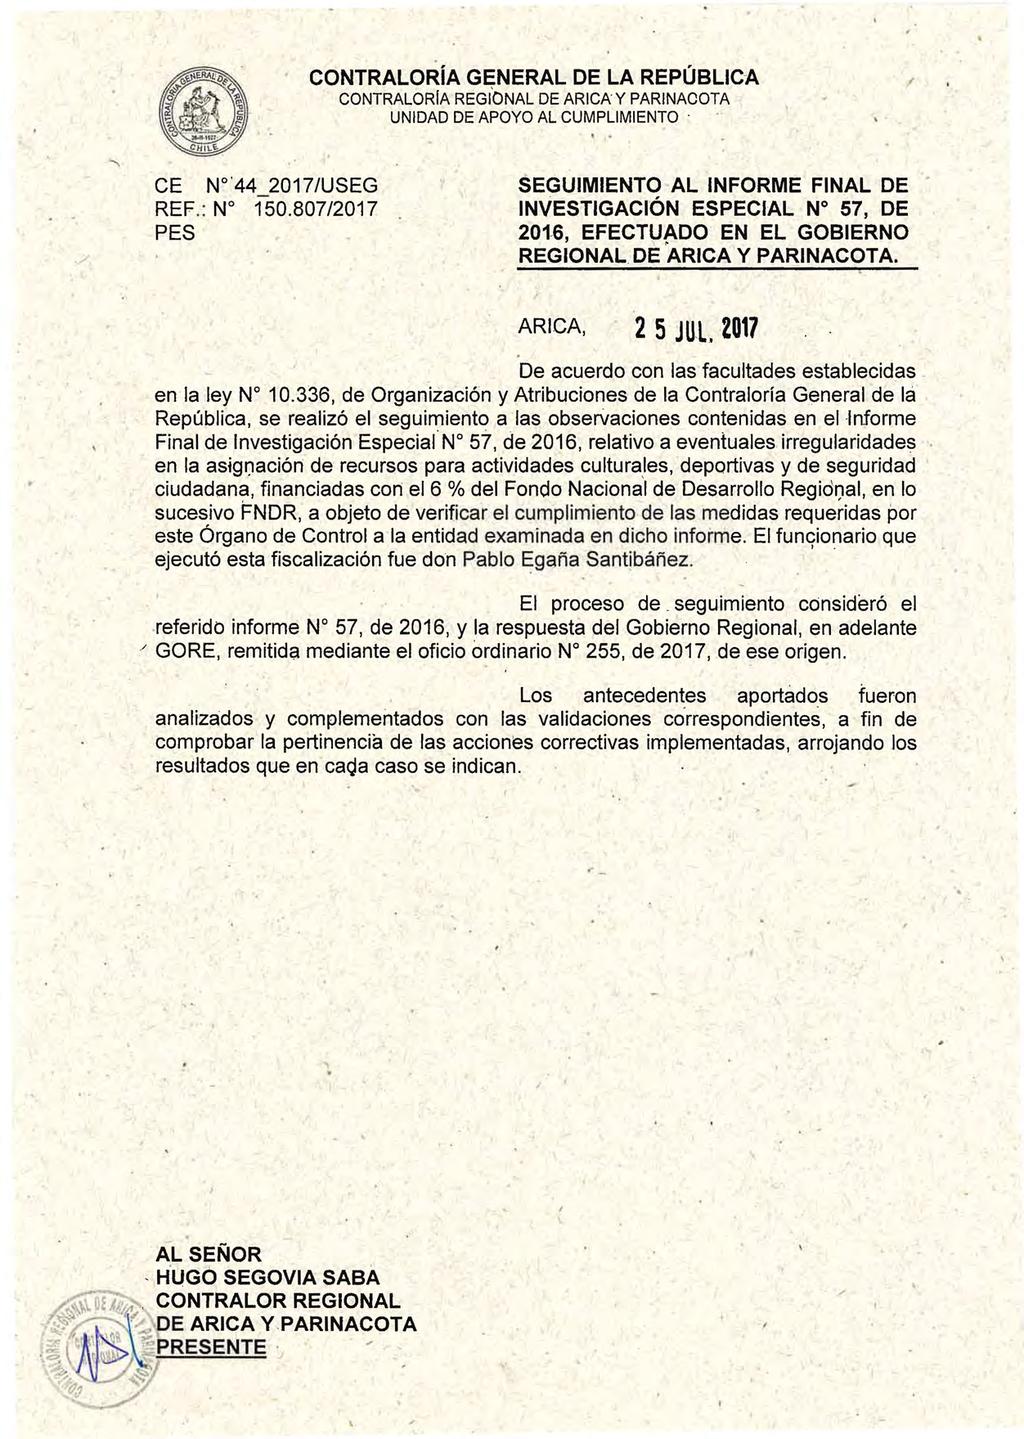 CONTRALORÍA GENERAL DE LA REPÚBLIC-A CONTRALORIA REGIONAL DE ARICA Y PARINACOTA UNIDAD DE APOYO AL CUMPLIMIENTO - CE N '44 2017/USEG REF.: No 150.